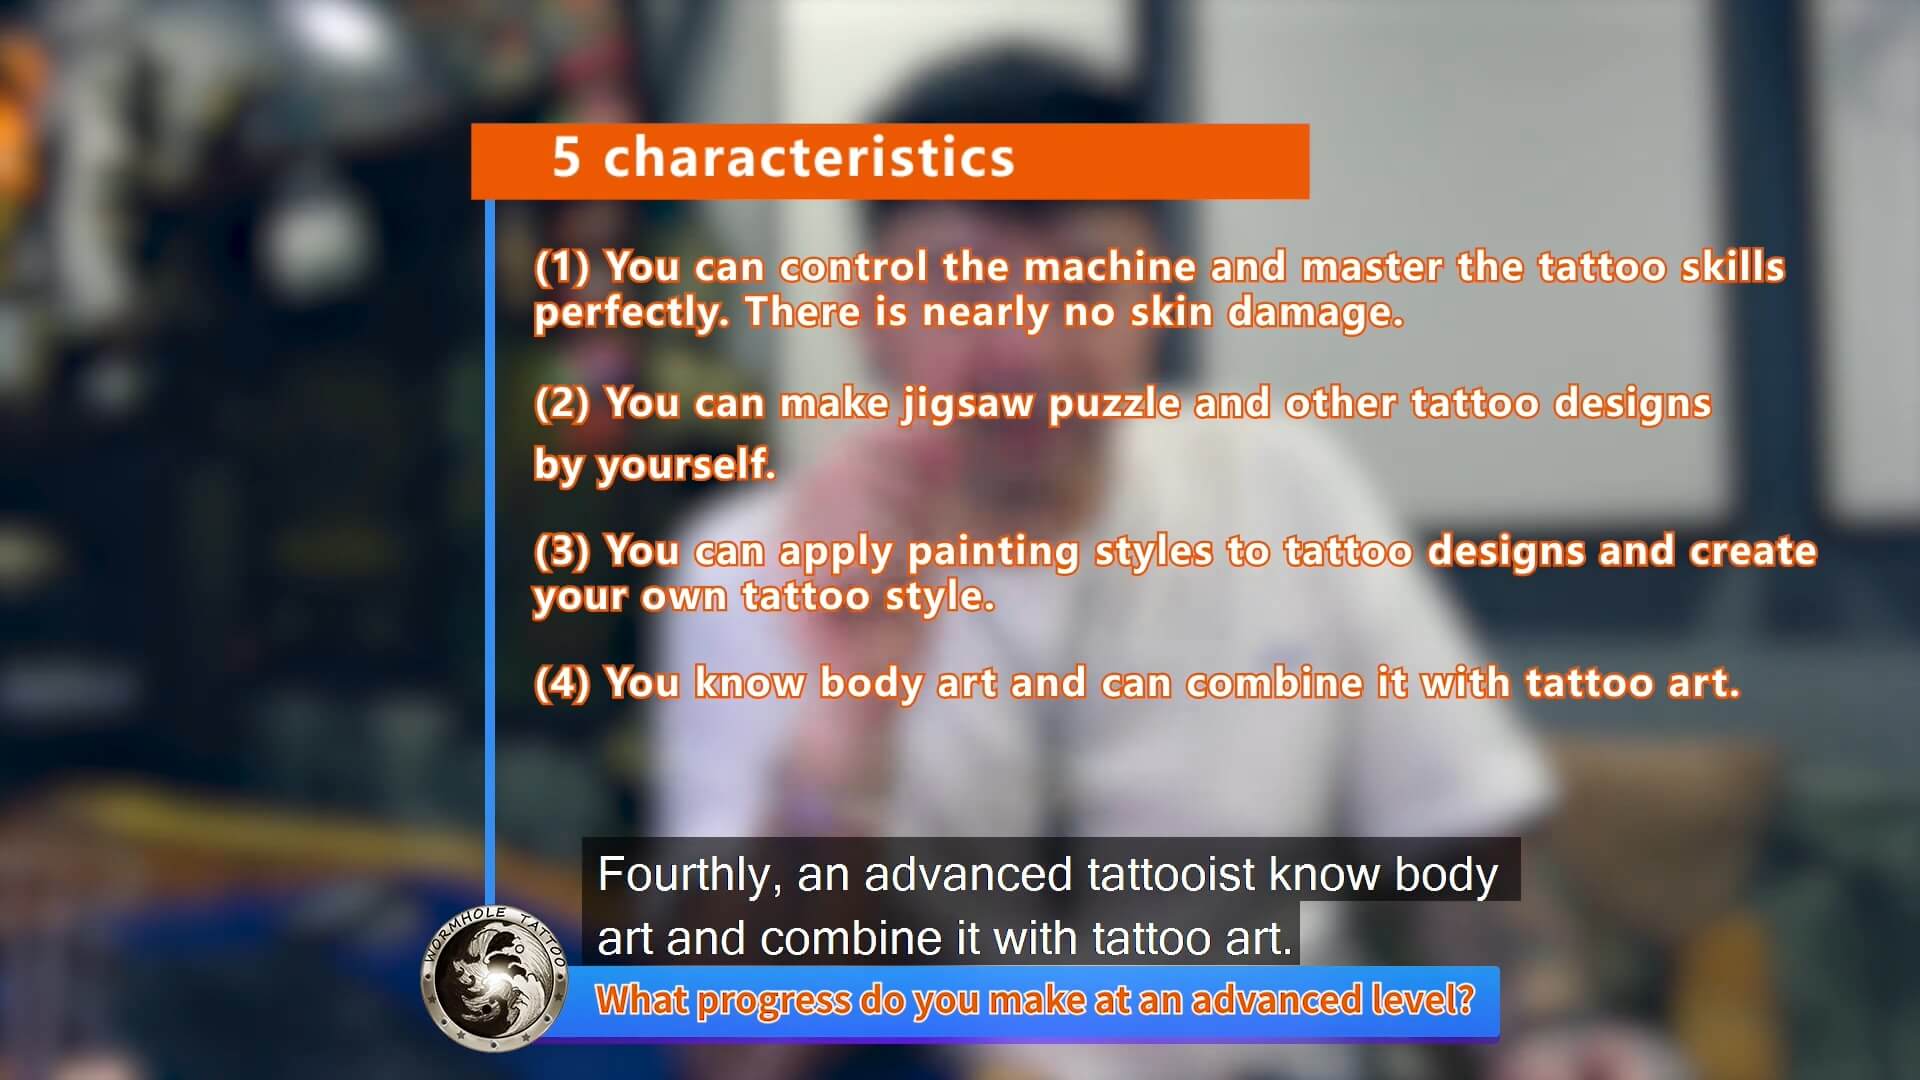 How to make tattoo